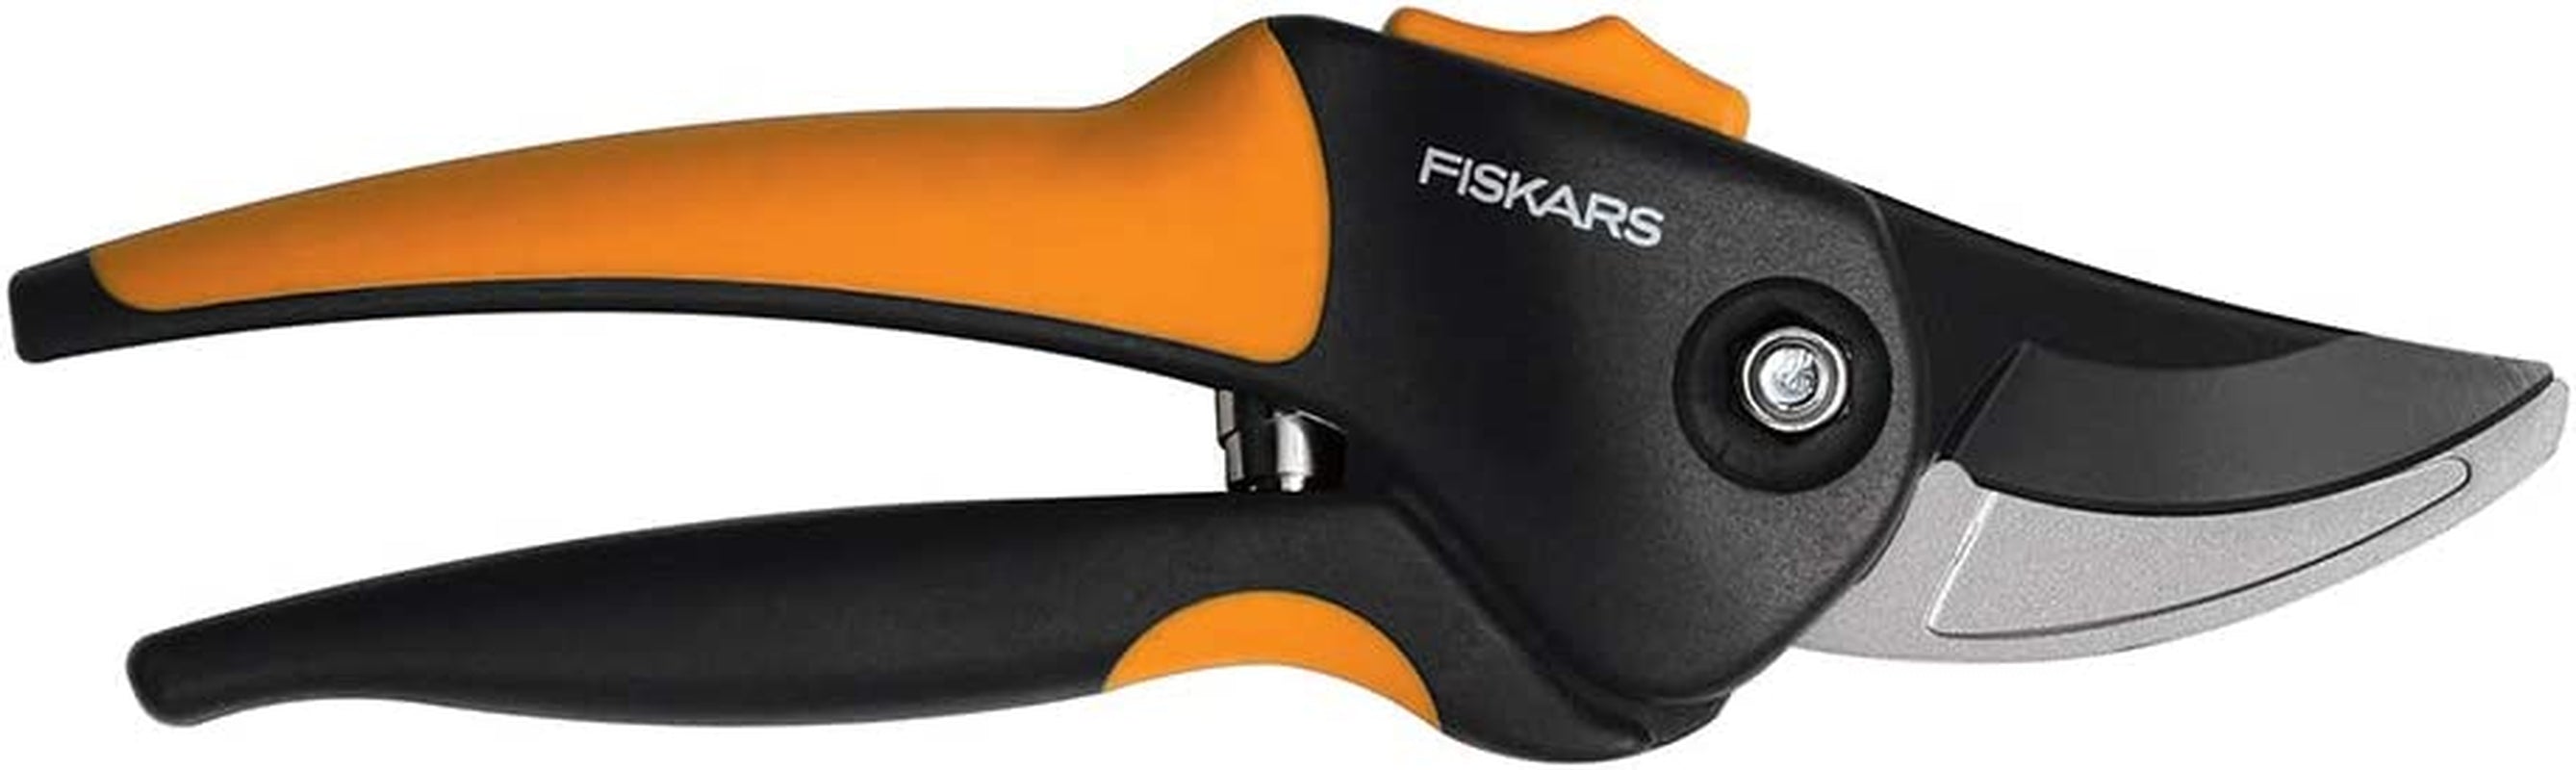 Fiskars, Fiskars 79436997J Softgrip Bypass Pruner, Black/Orange